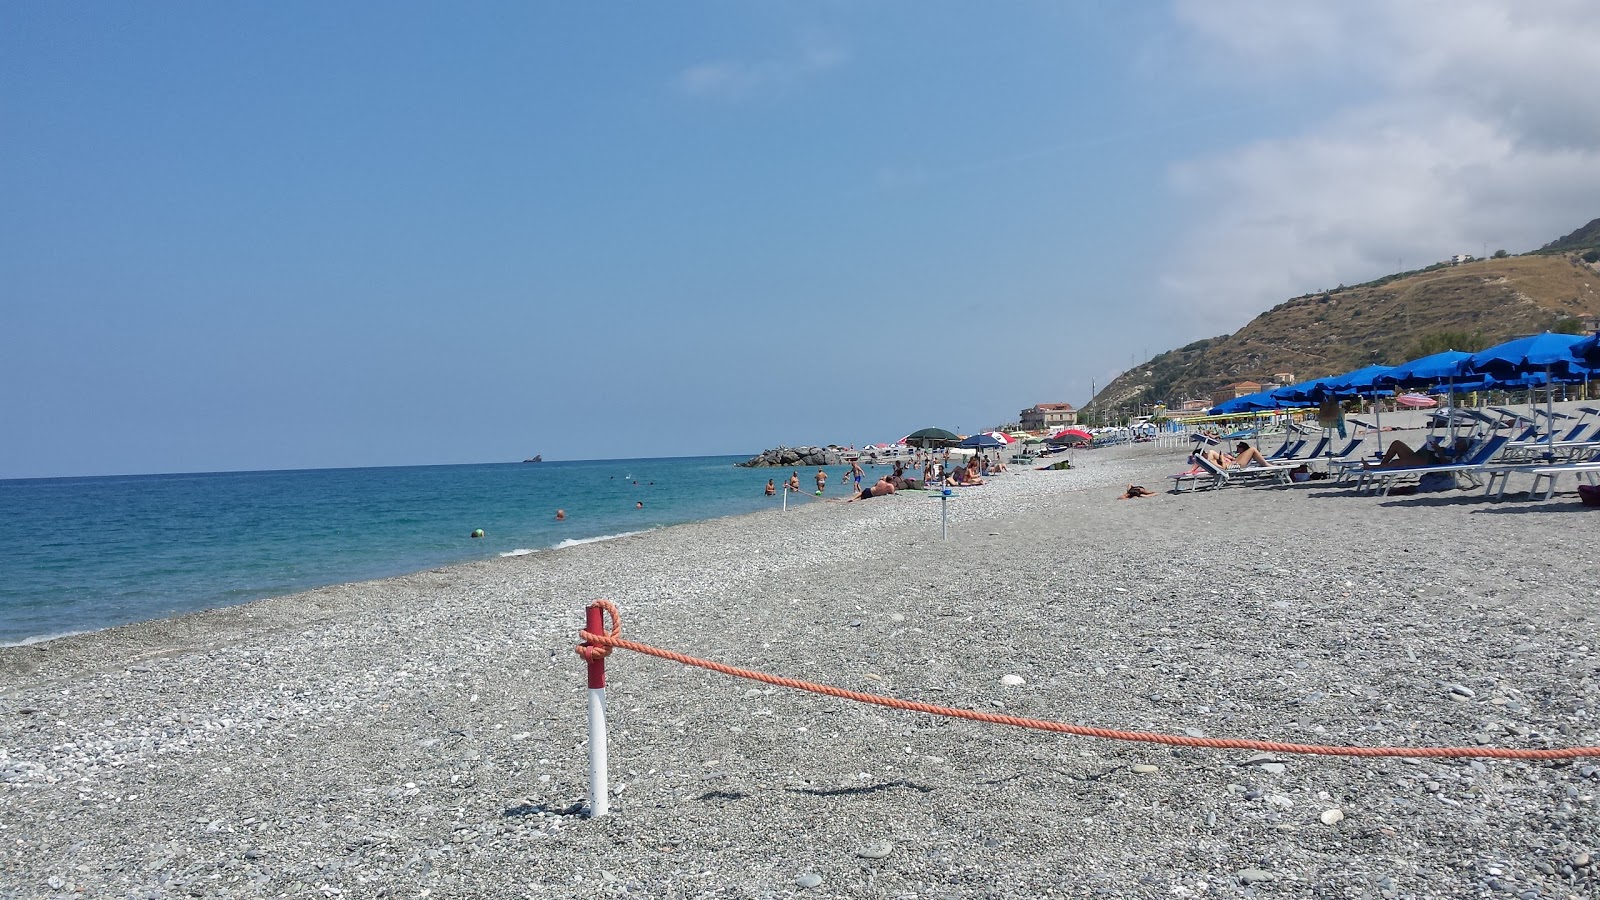 Spiaggia Amantea'in fotoğrafı gri ince çakıl taş yüzey ile